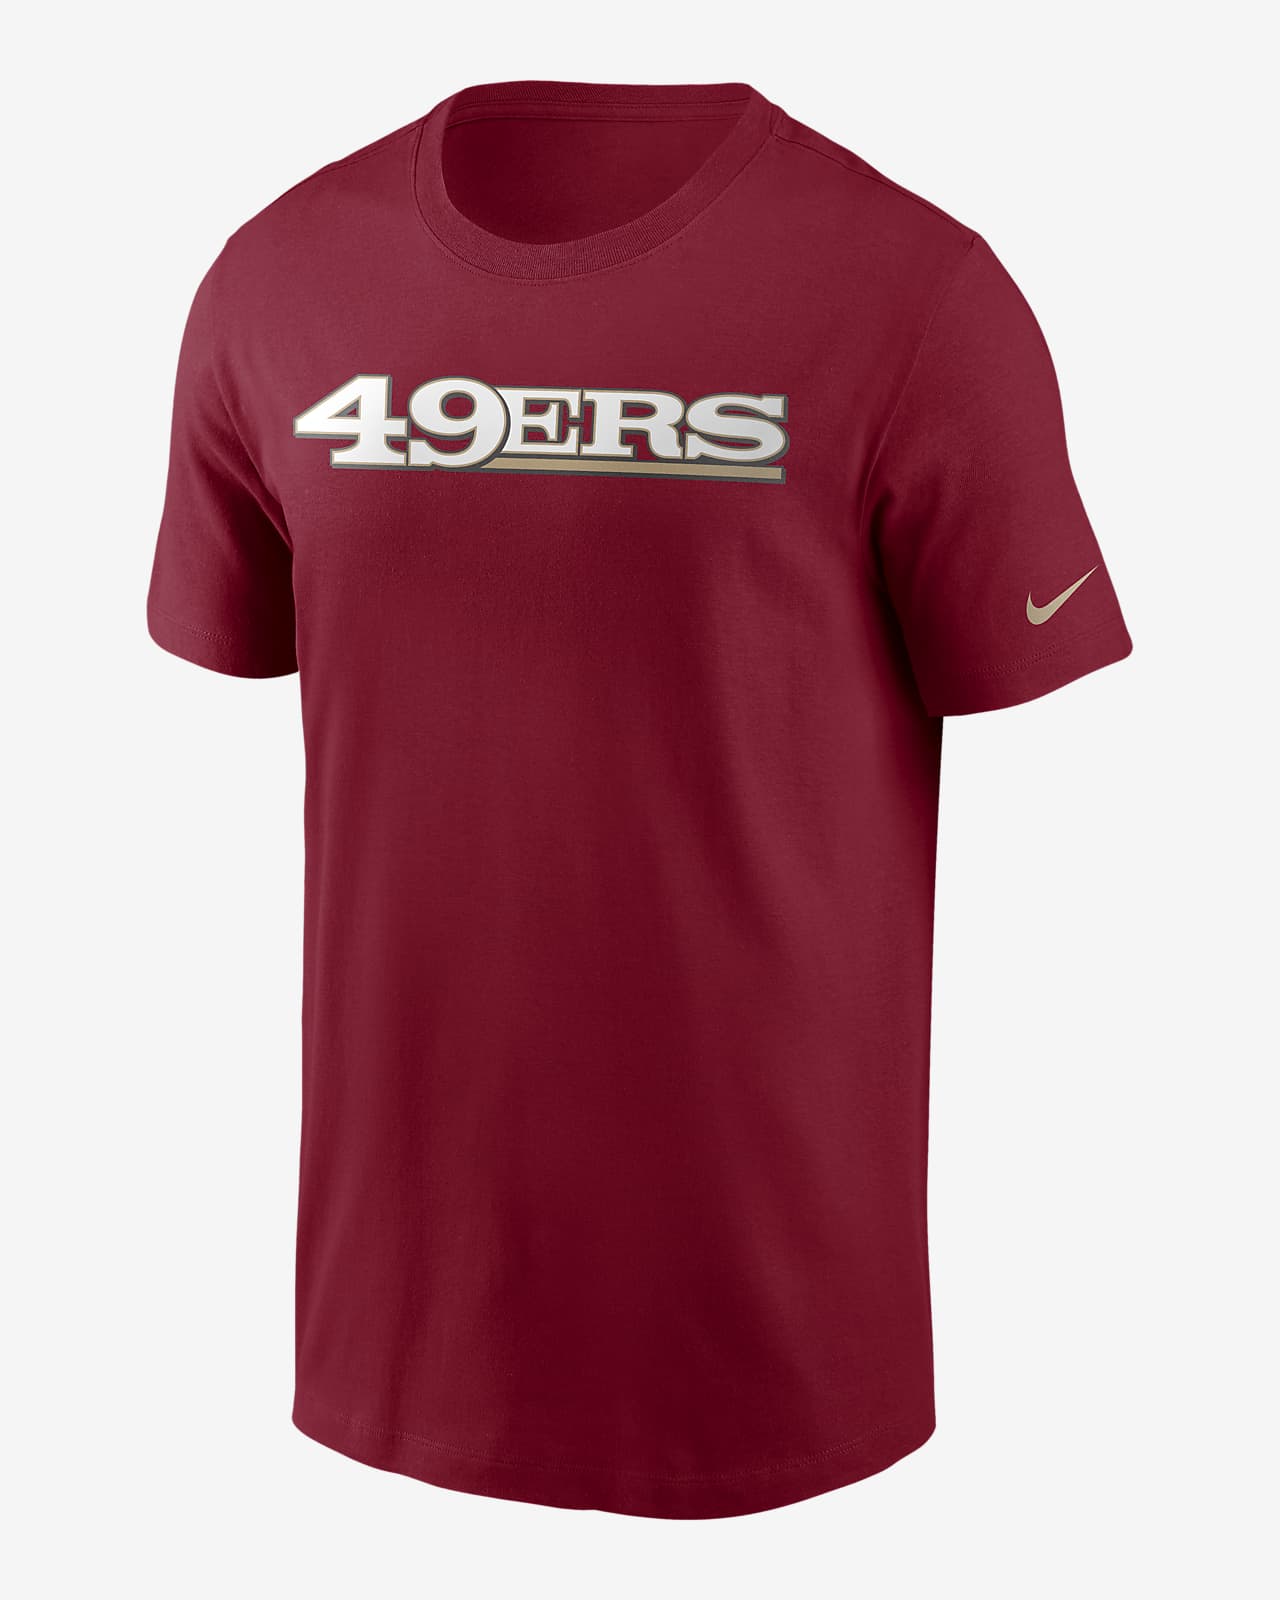 Nike (NFL 49ers) Men's T-Shirt. Nike.com